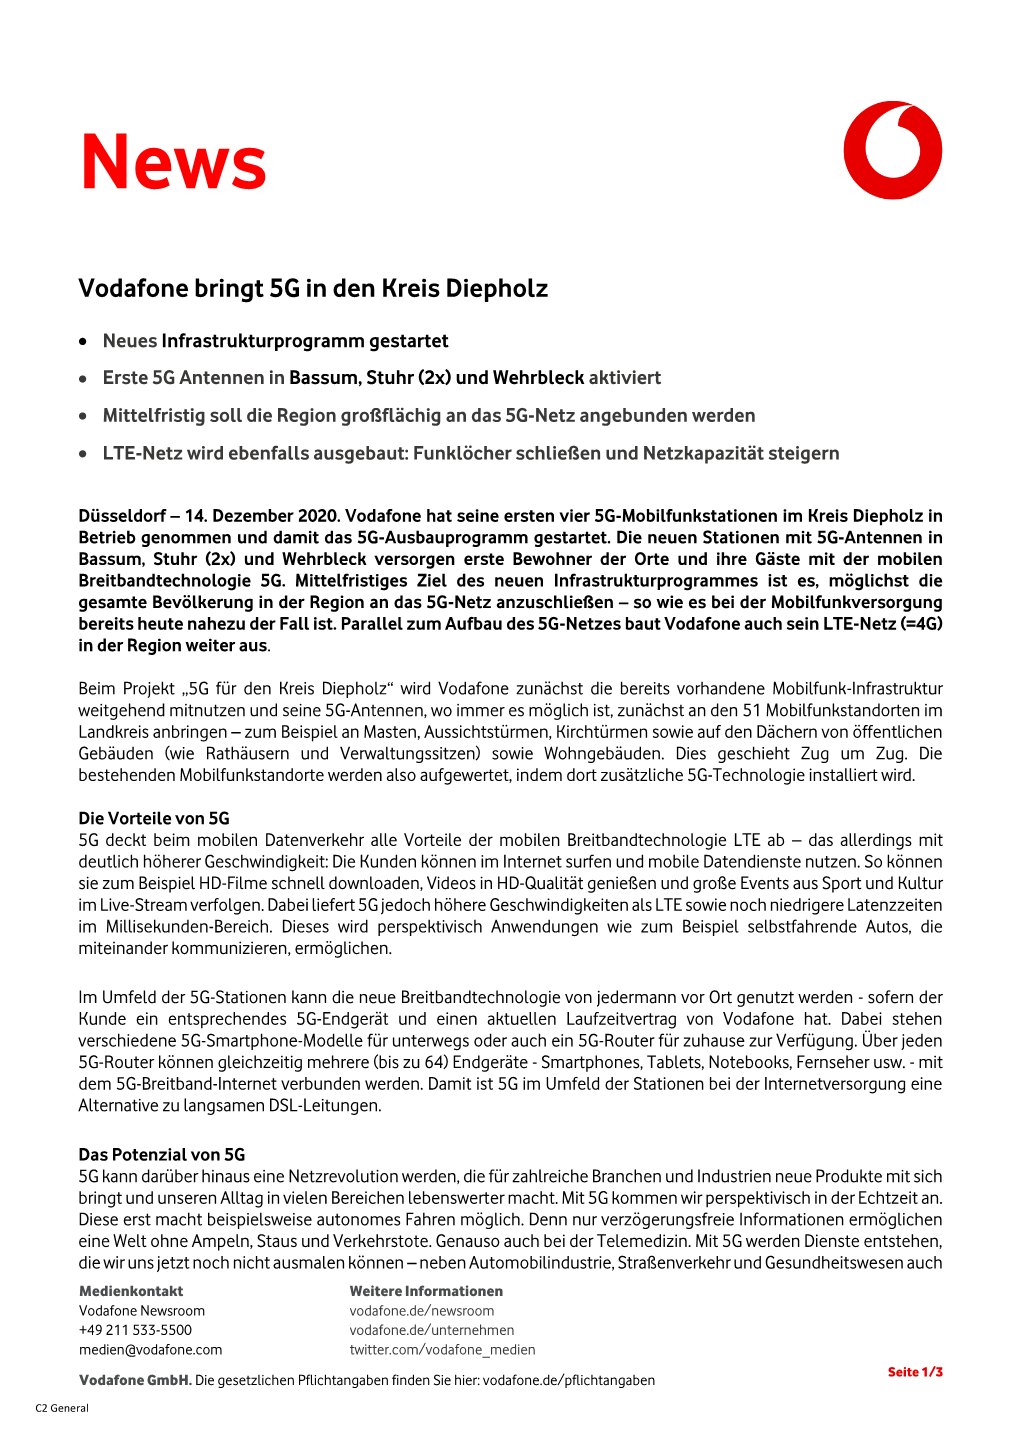 Vodafone Bringt 5G in Den Kreis Diepholz